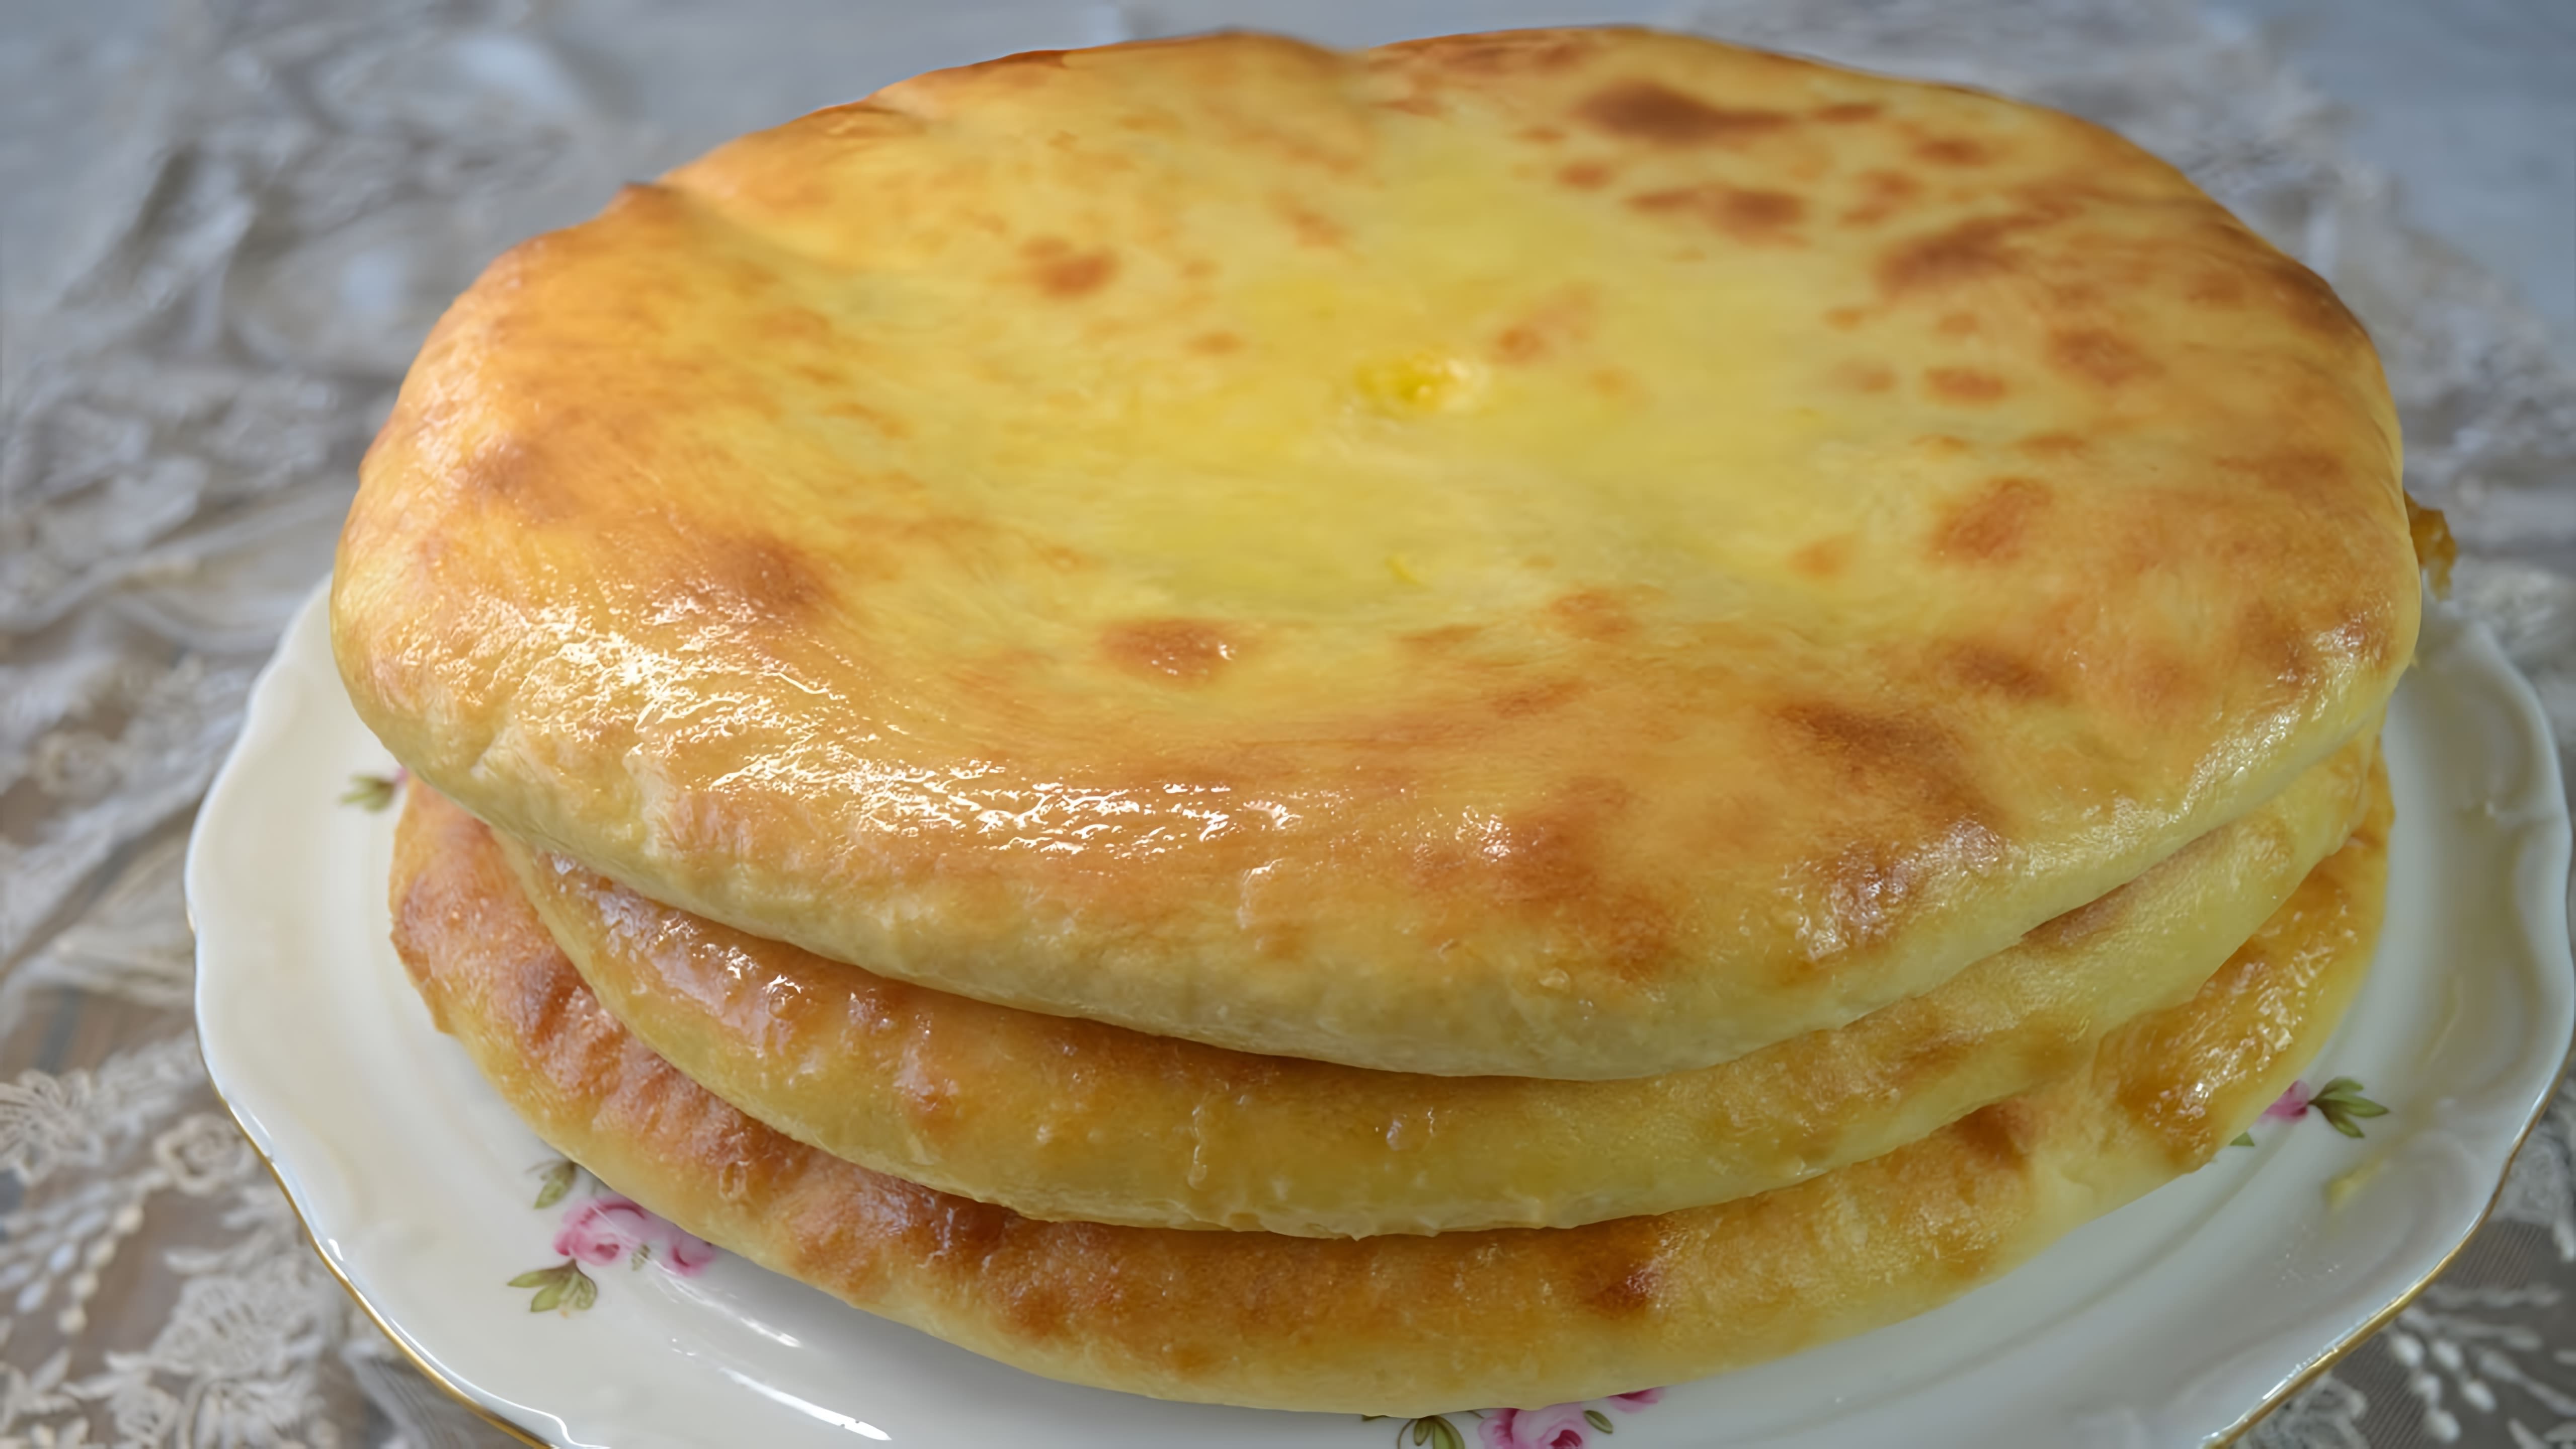 В этом видео демонстрируется рецепт приготовления осетинских пирогов с картофелем и сыром